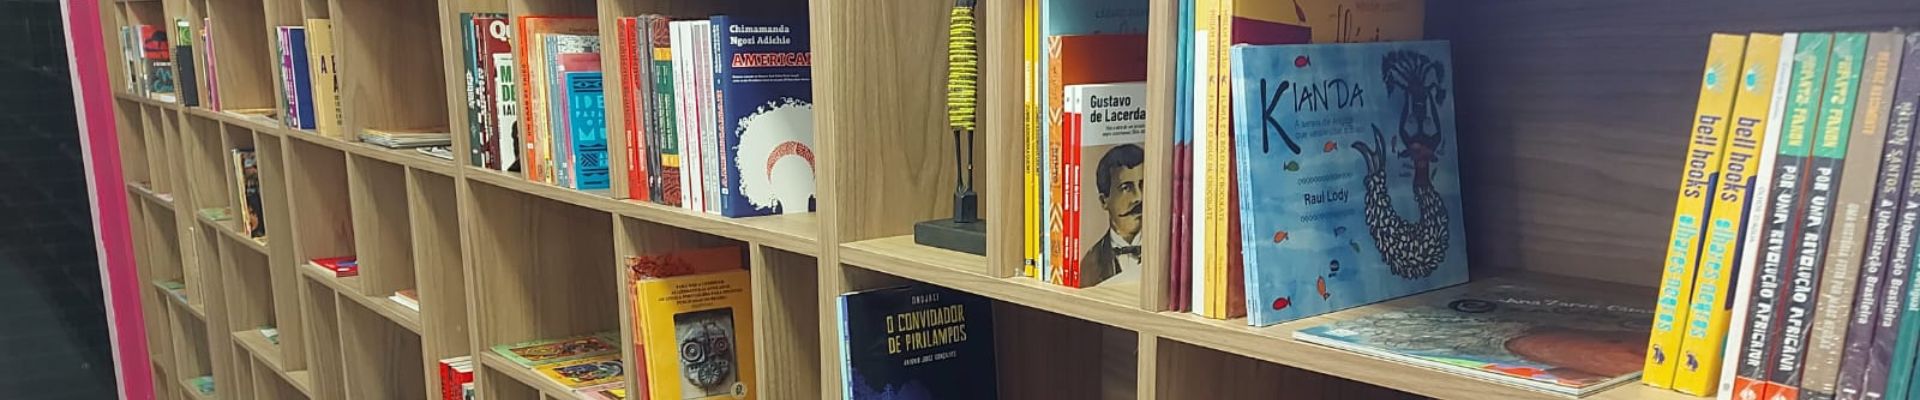 Florianópolis inaugura a 1ª biblioteca focada em literatura afro-brasileira e antirracista